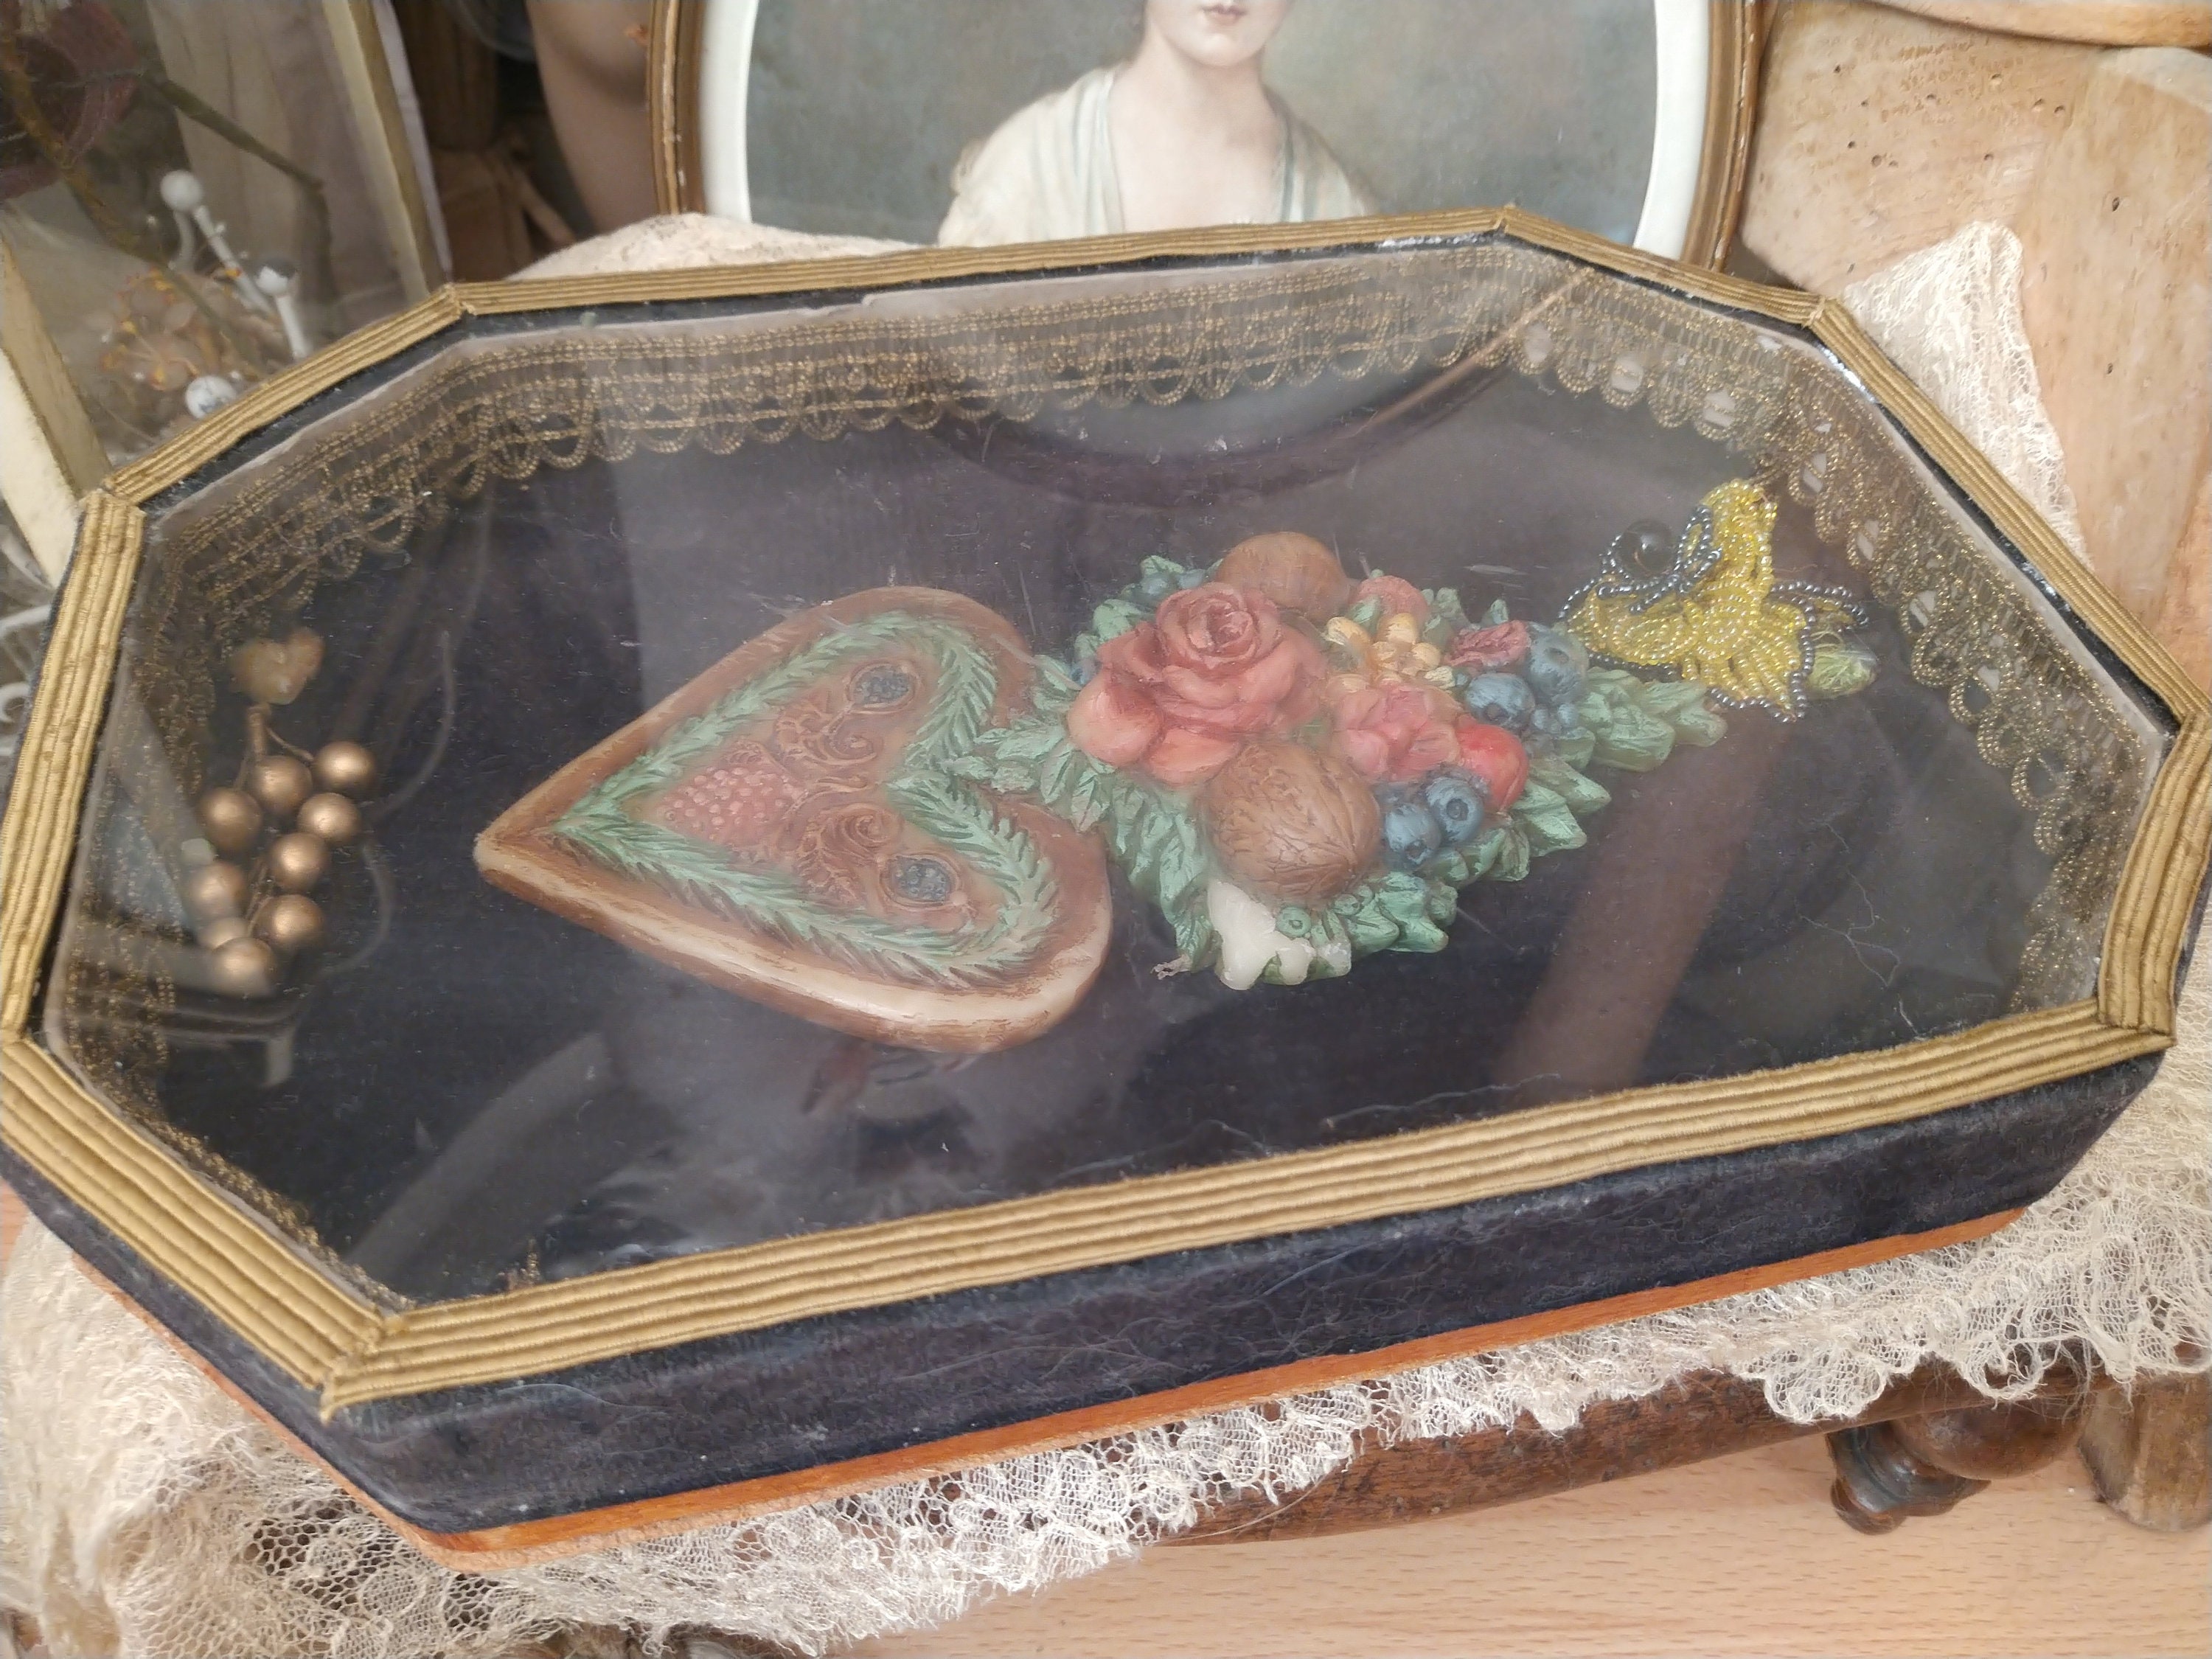 Antique Wax Mould Fruit Basket and Monogram, Vintage Springerle Cookie Mold  